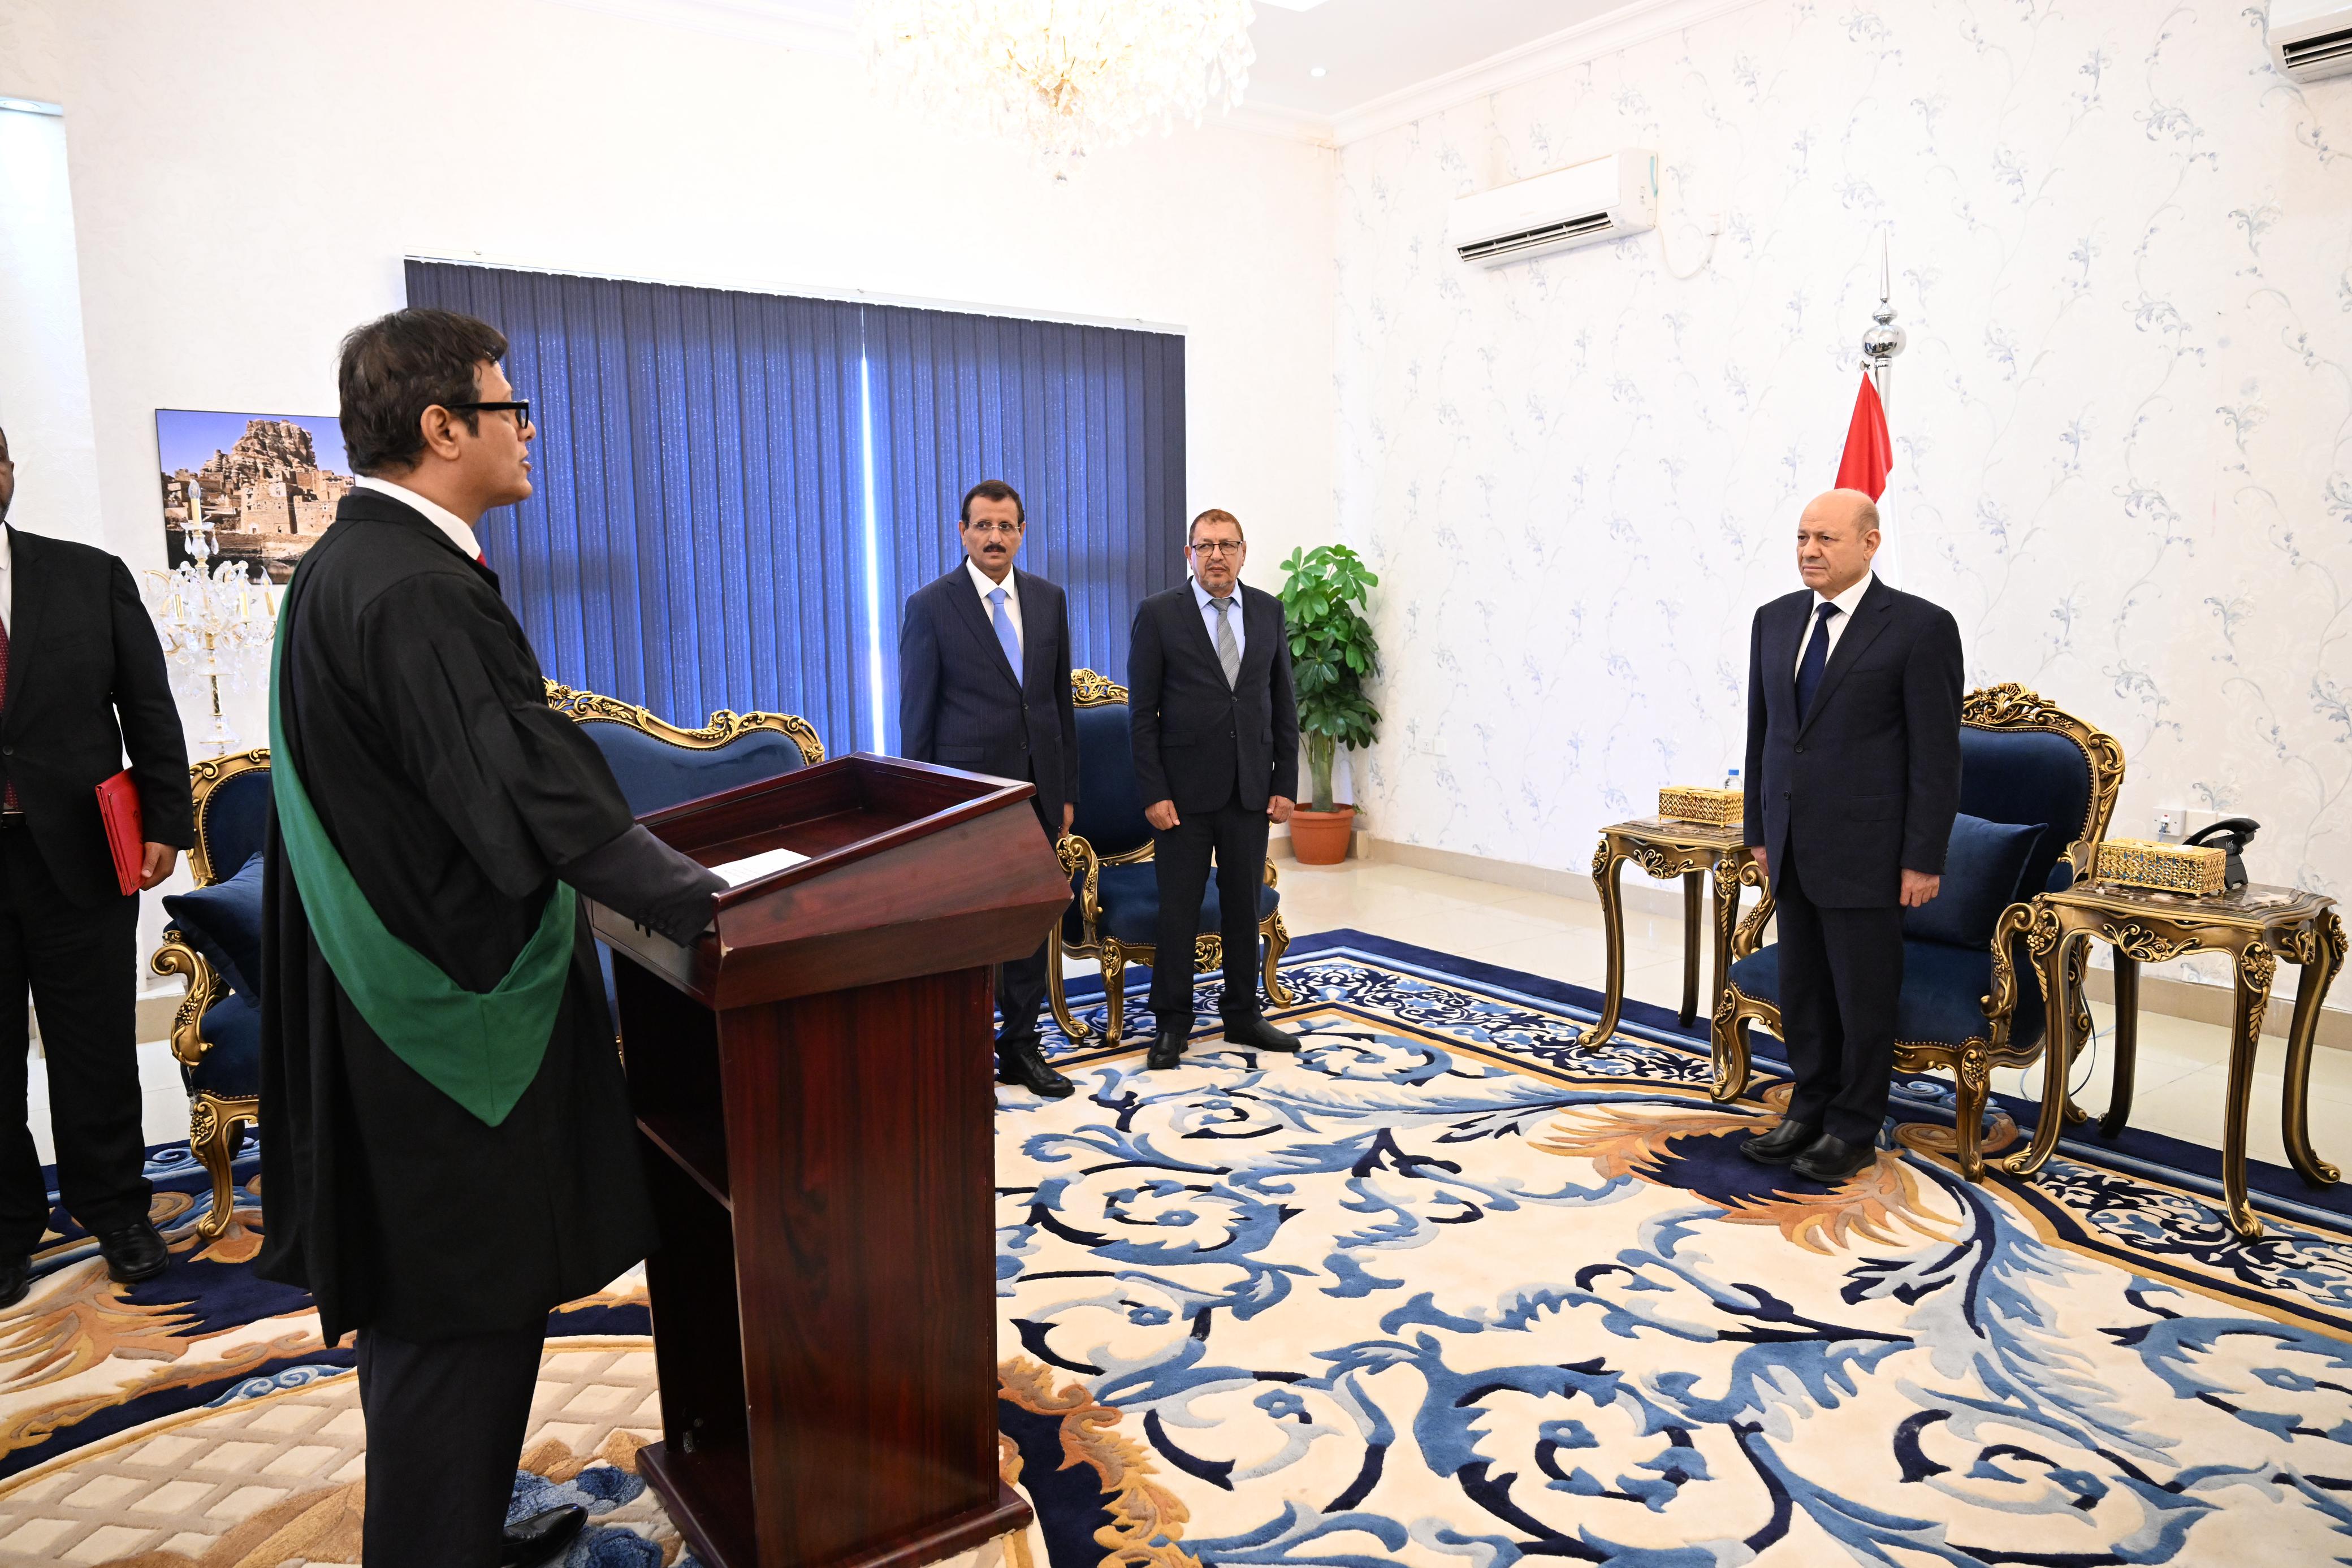 القاضي صالح المرفدي يؤدي اليمين القانونية أمام رئيس مجلس القيادة الرئاسي